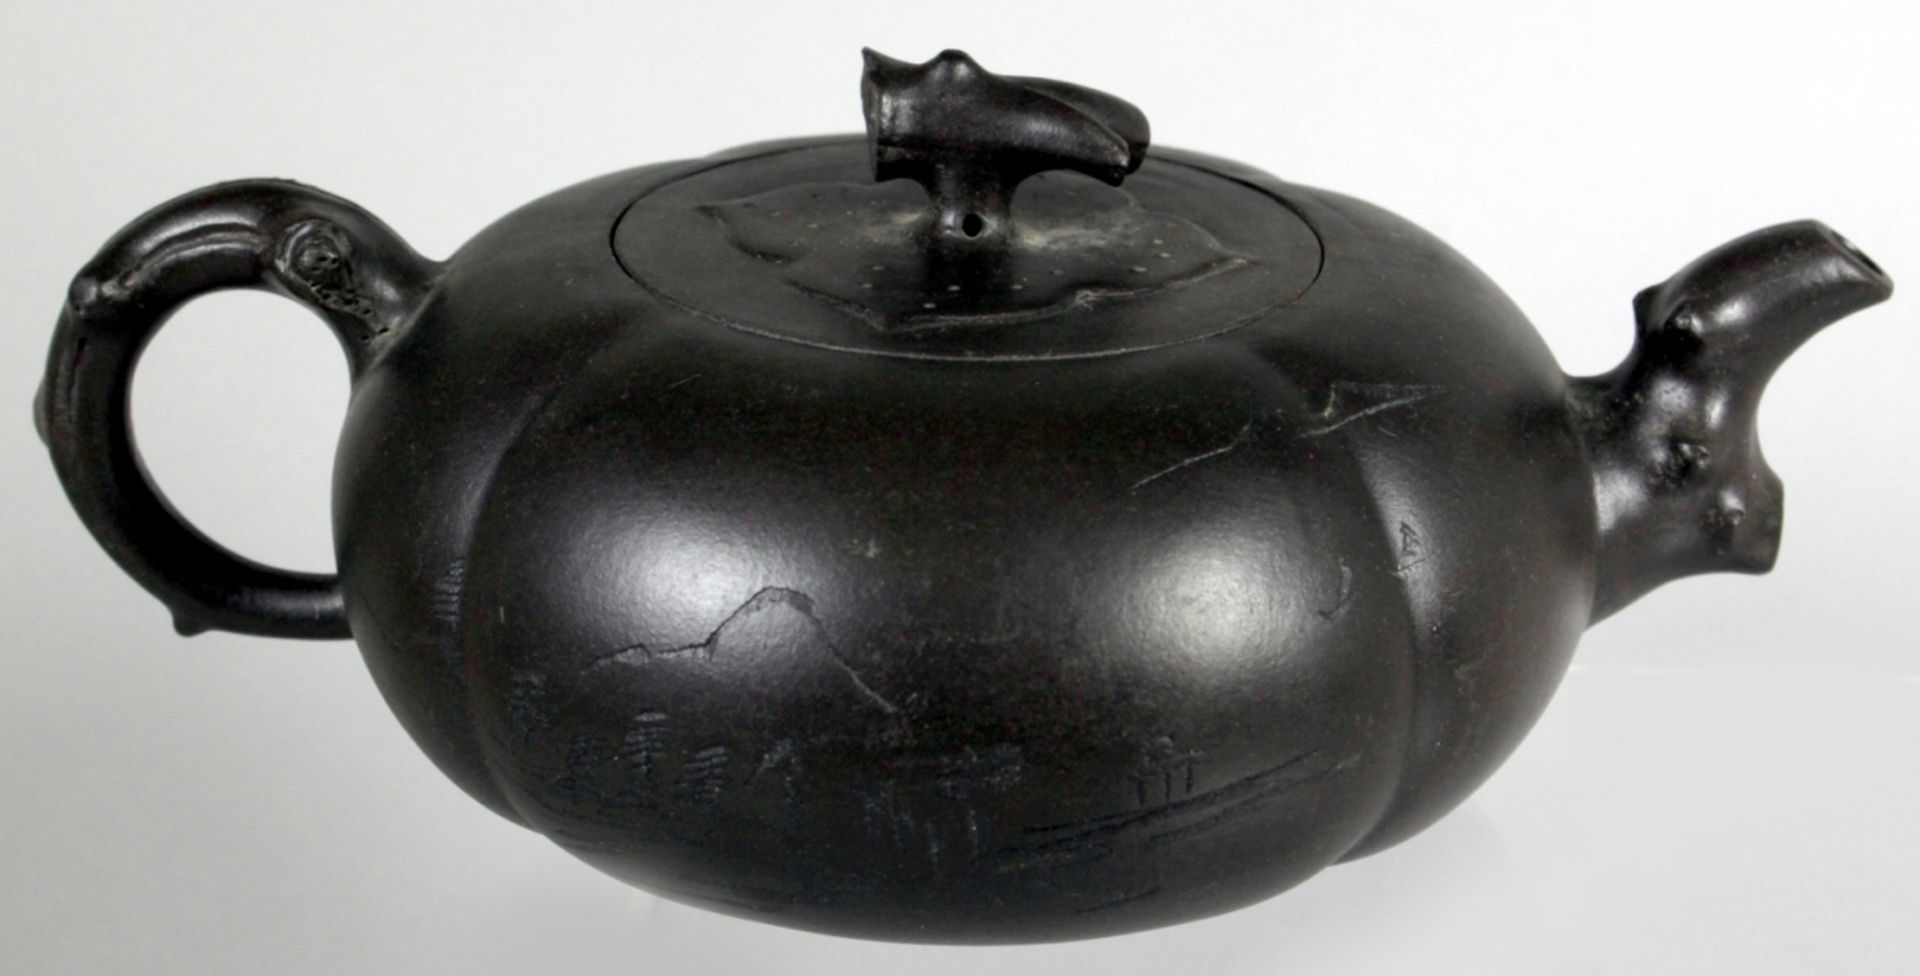 Terracotta-Teekanne, China, 2. Hälfte 20. Jh., 4-fach gerippte Wandung, Flachdeckel mitAstknauf, - Bild 2 aus 3